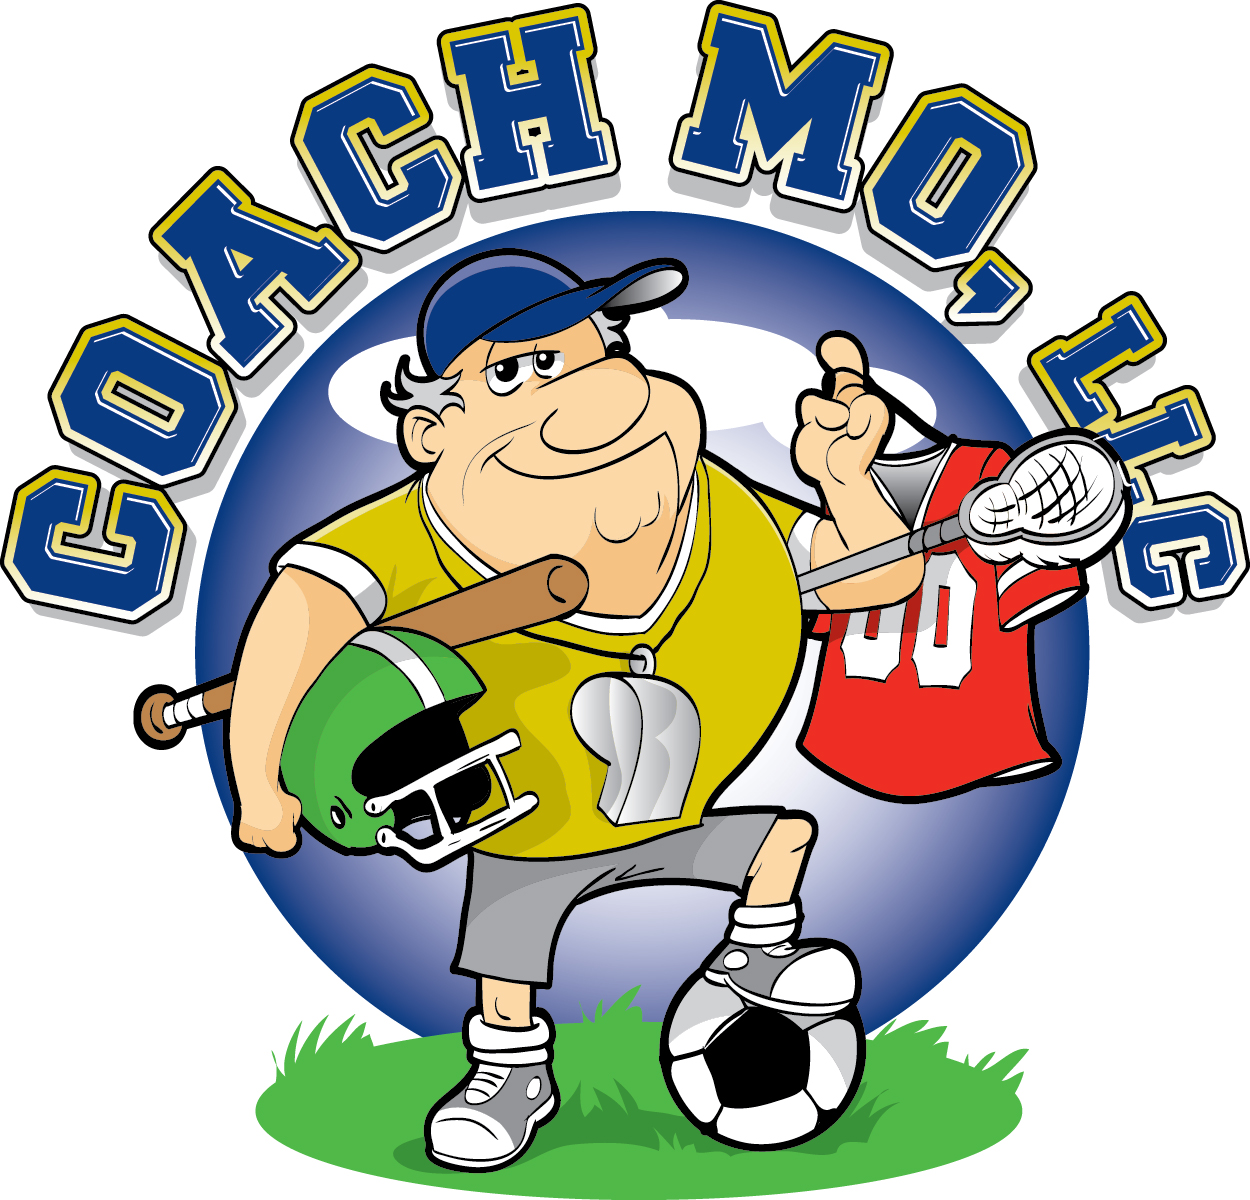 Coach Mo LLC